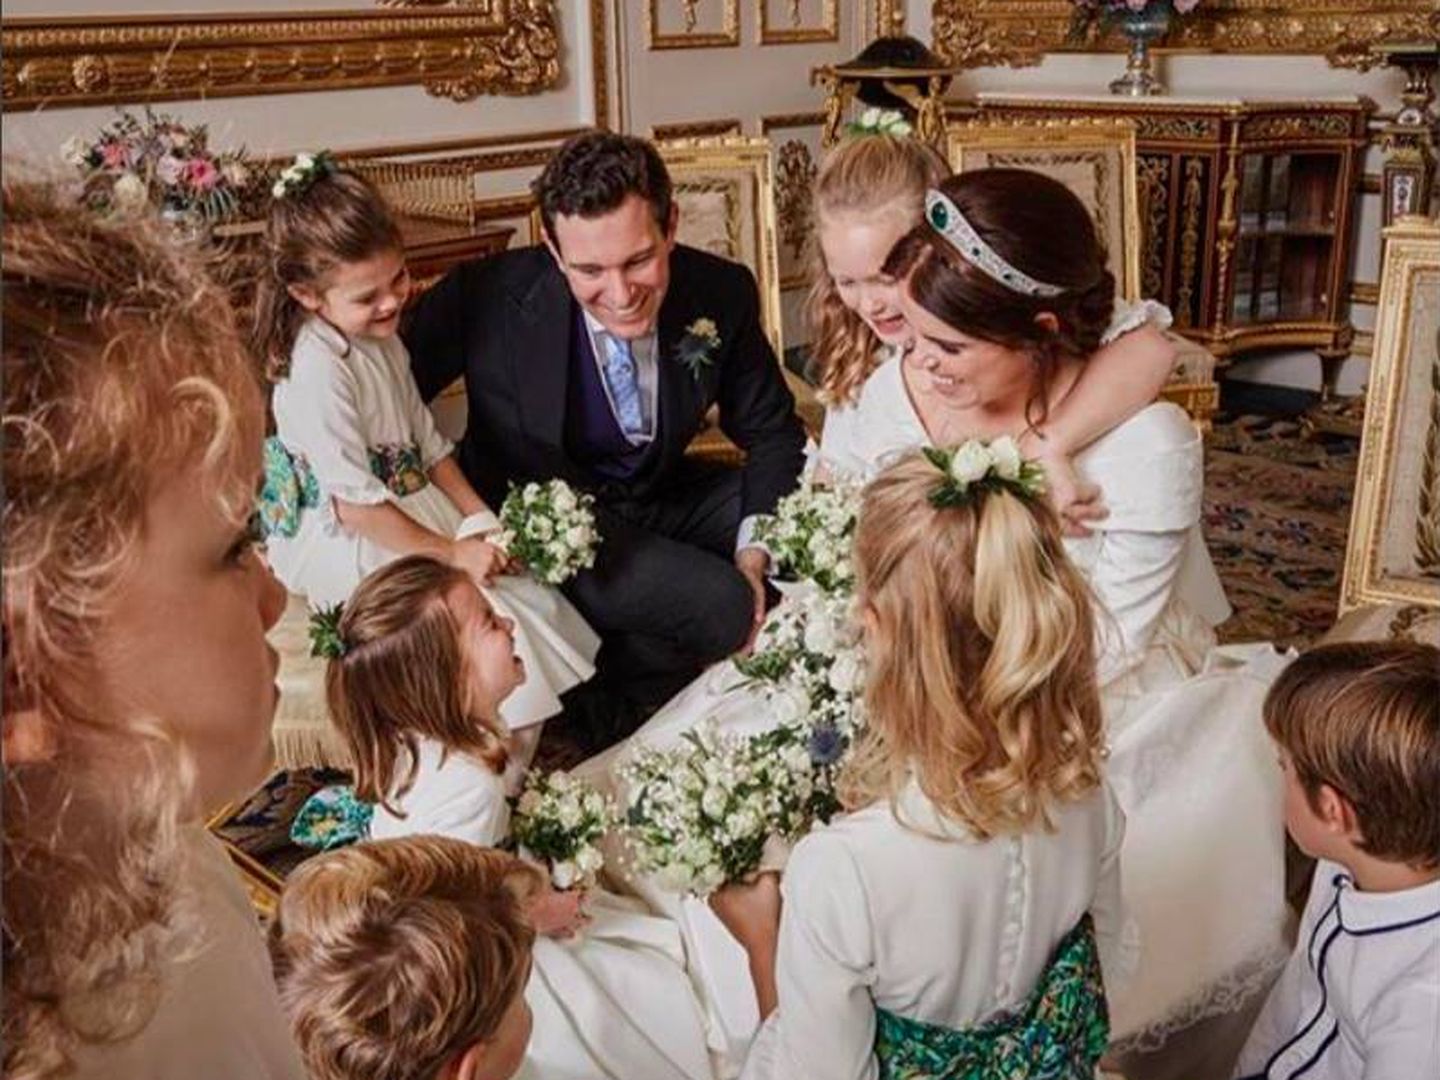 Los niños rodean a la novia. (Instagram @princesseugenie)